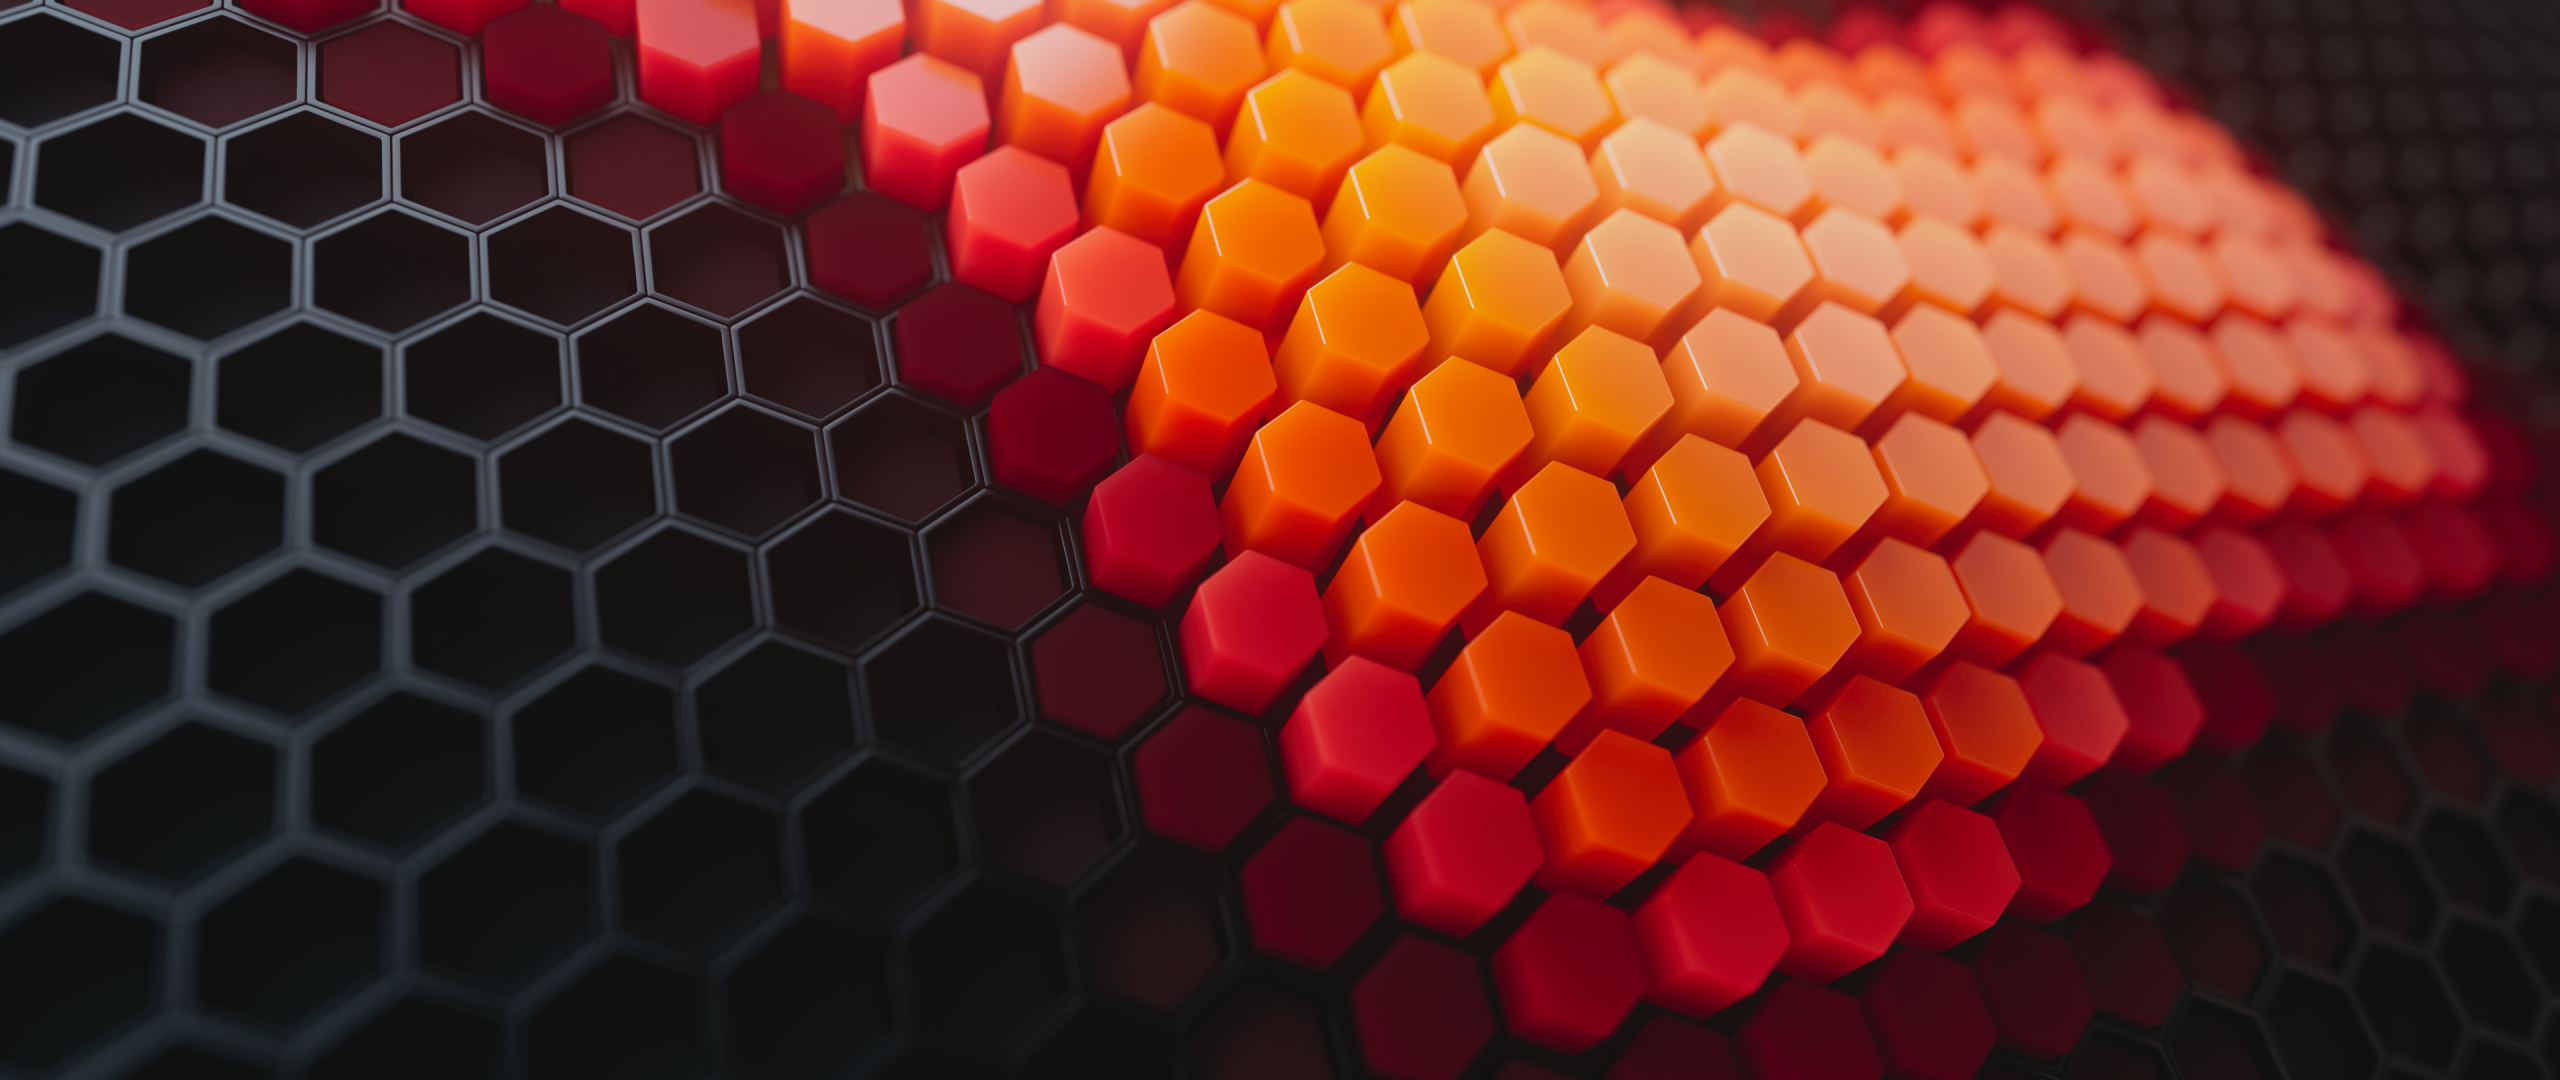 Hexagons Wallpaper 4K, Patterns, Abstract, #2287